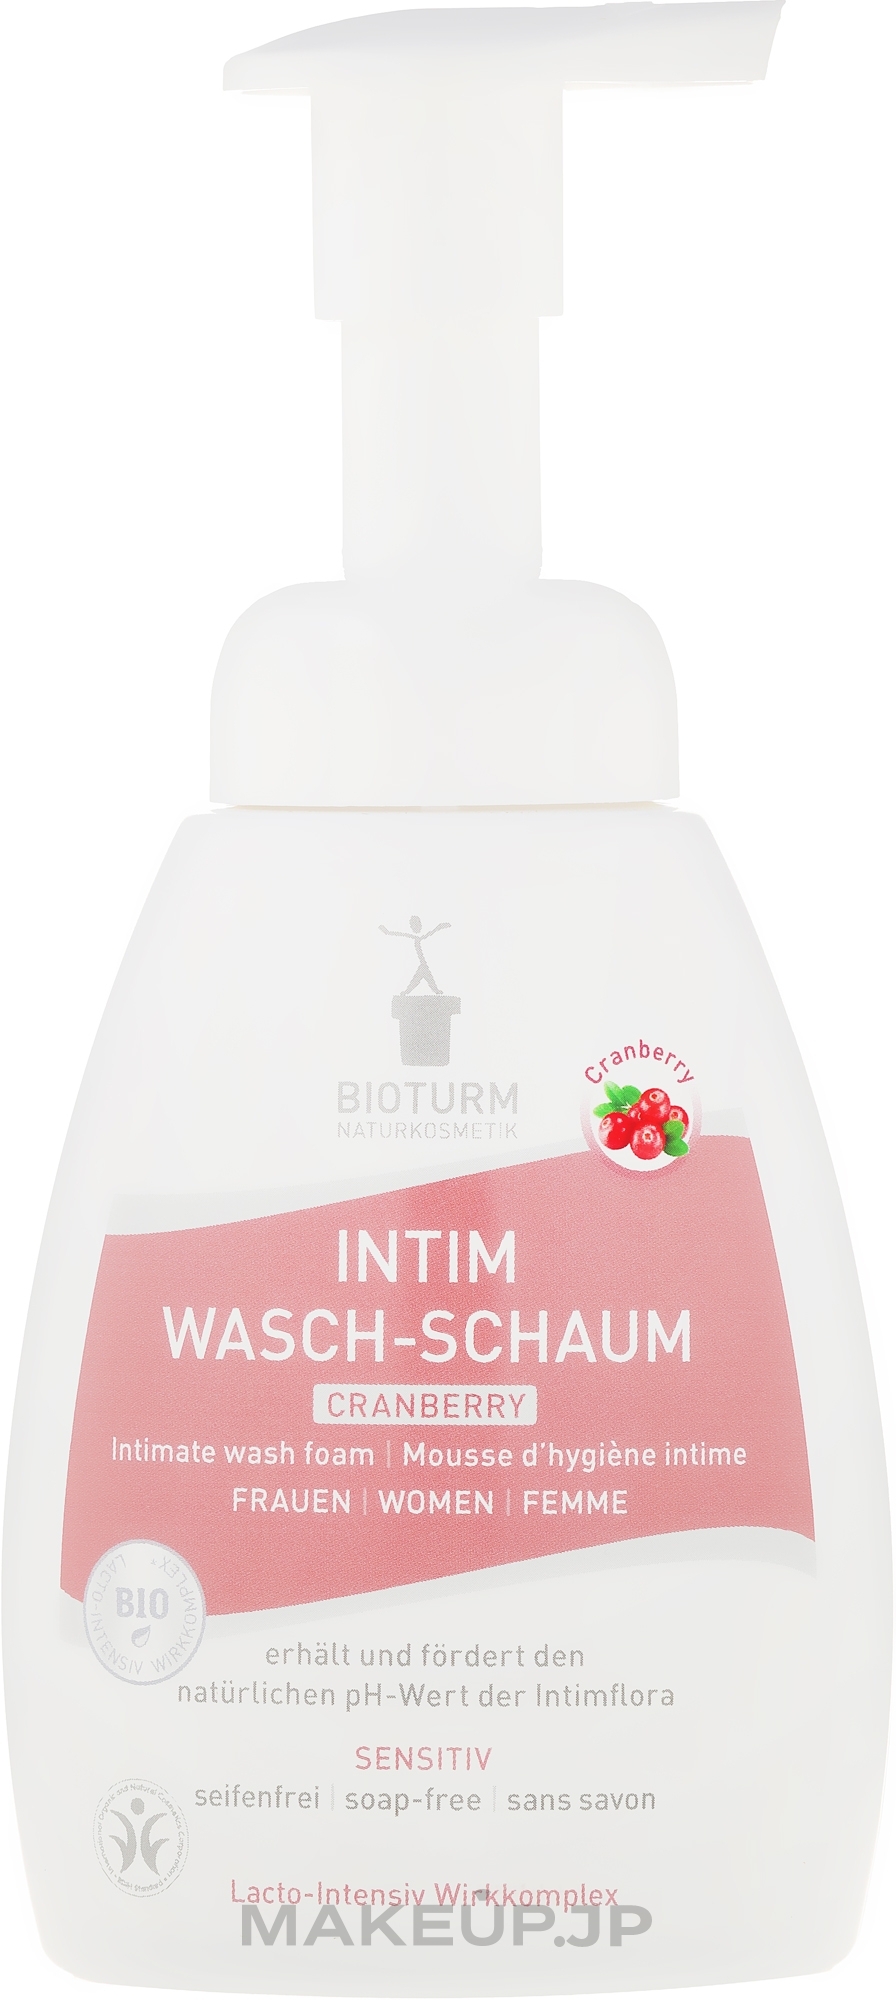 Intimate Wash Foam "Cranberry" - Bioturm Intim Wasch-Schaum Cranberry No.90 — photo 250 ml